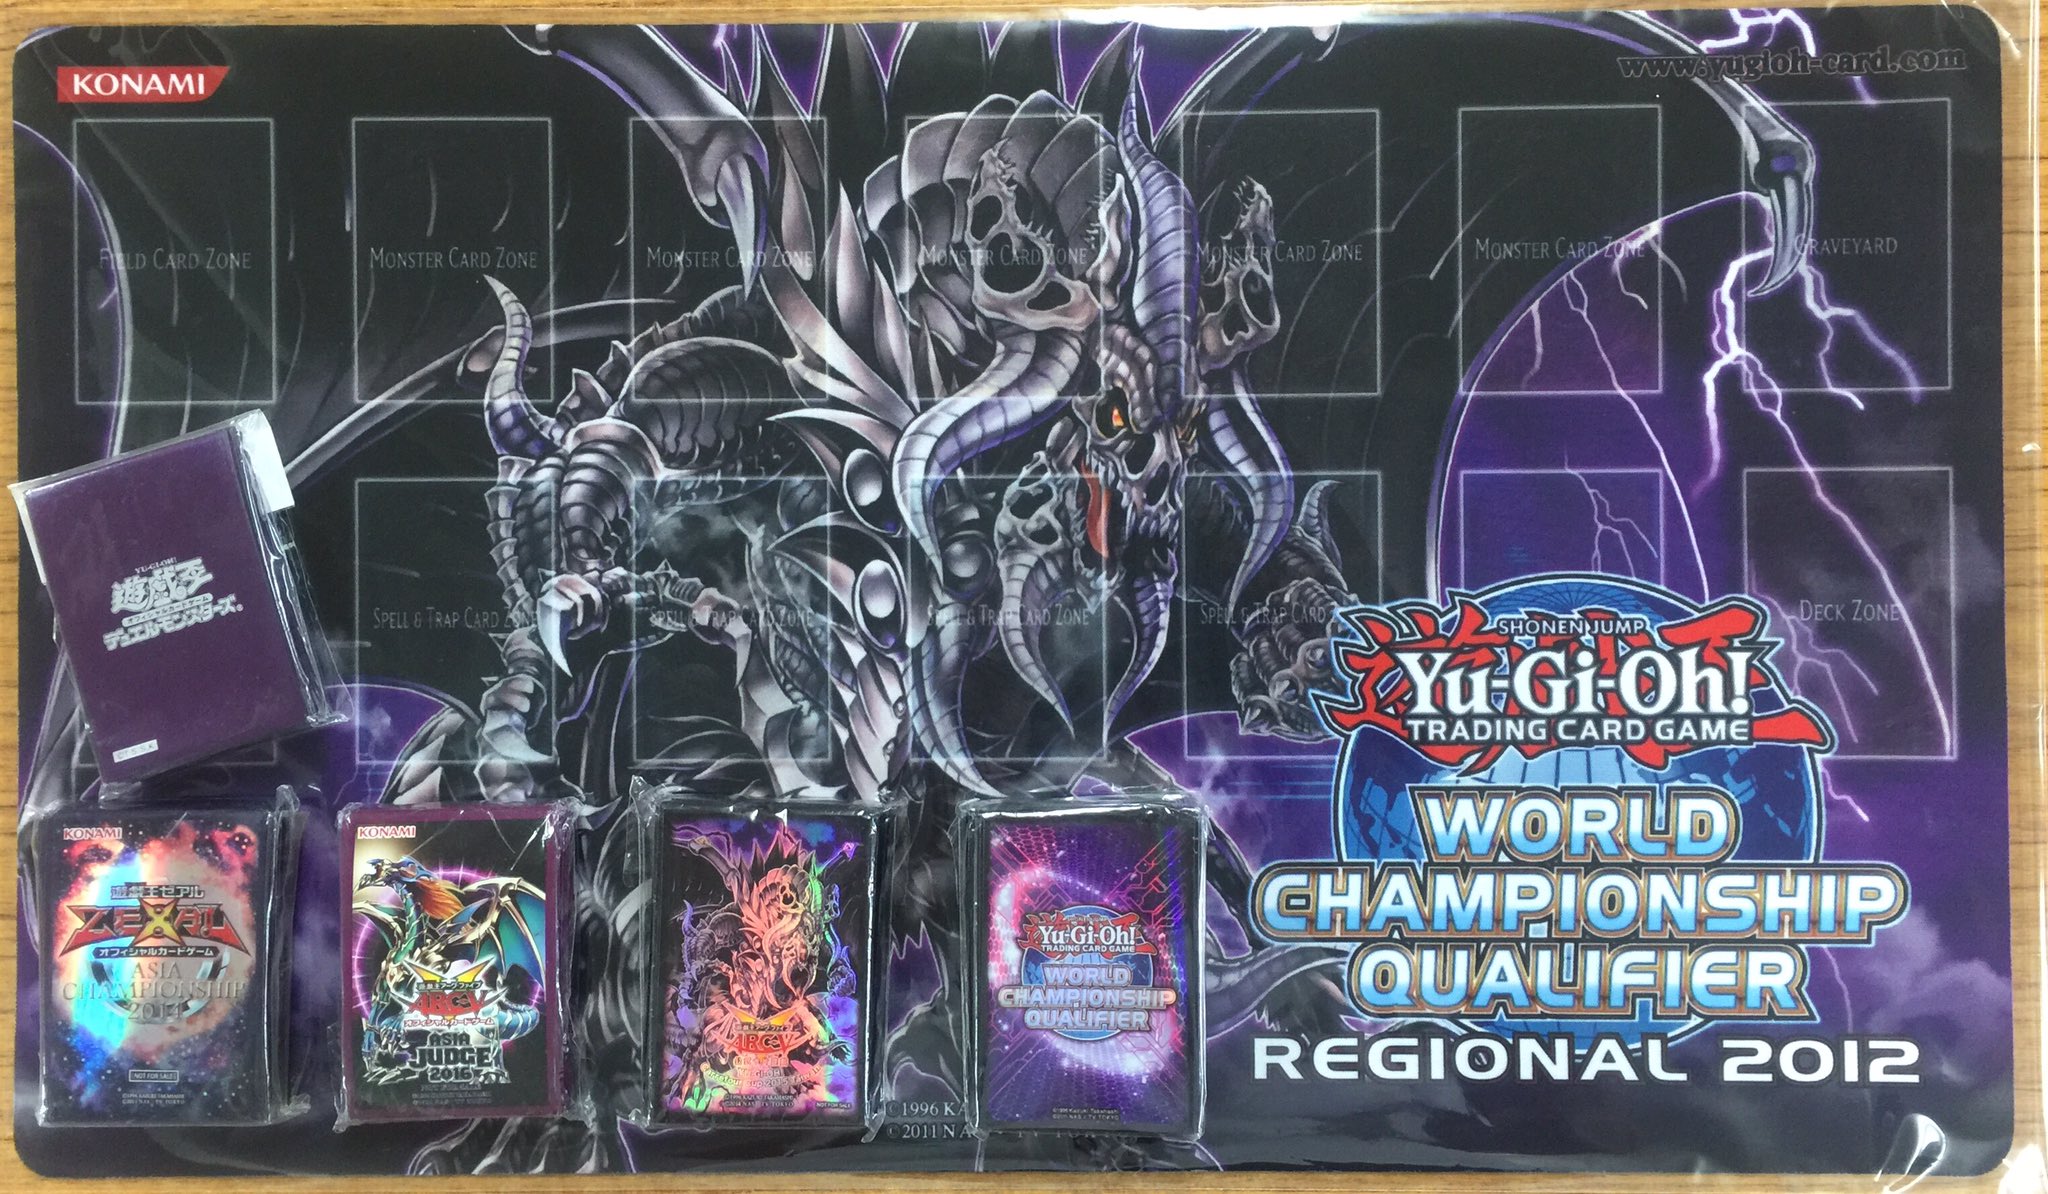 Yugioh WCQ Regional 2012 Grapha, Dragon Lord of Dark World Playmat